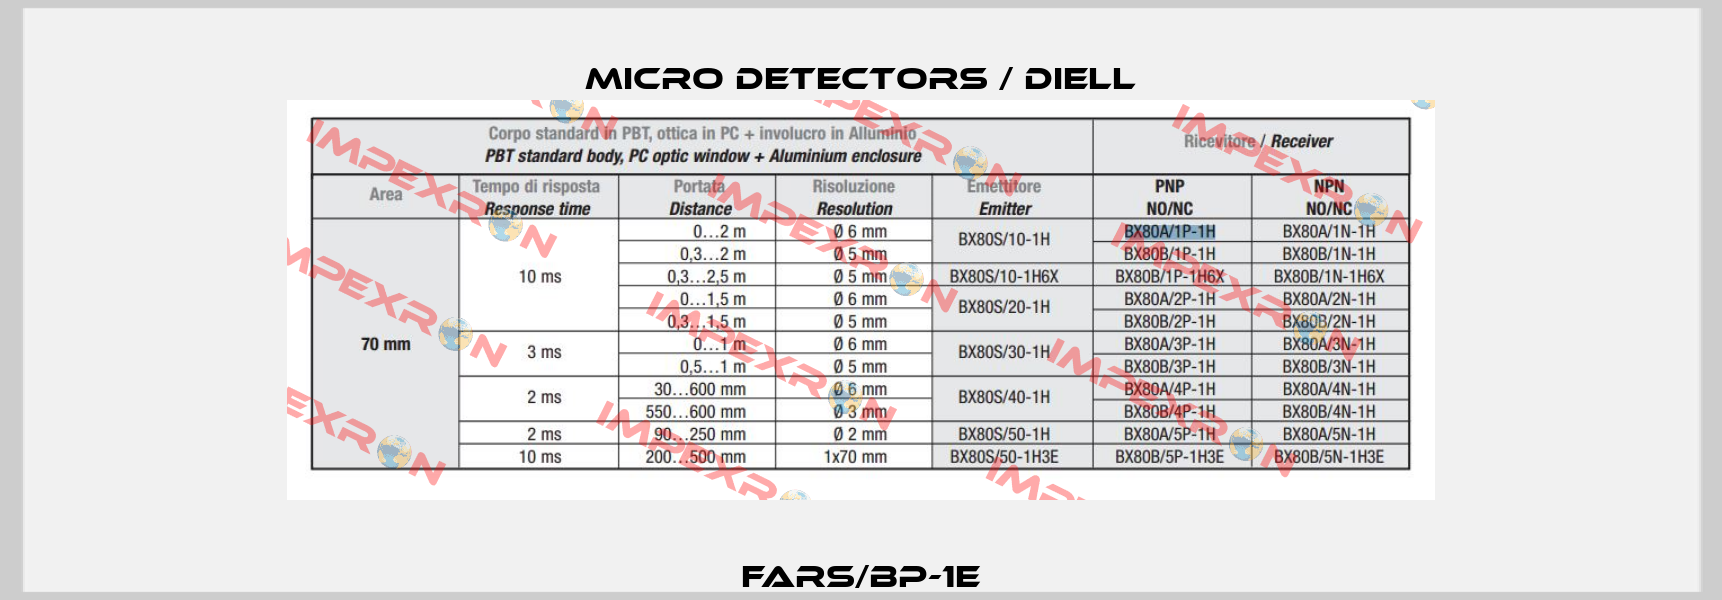 FARS/BP-1E Micro Detectors / Diell